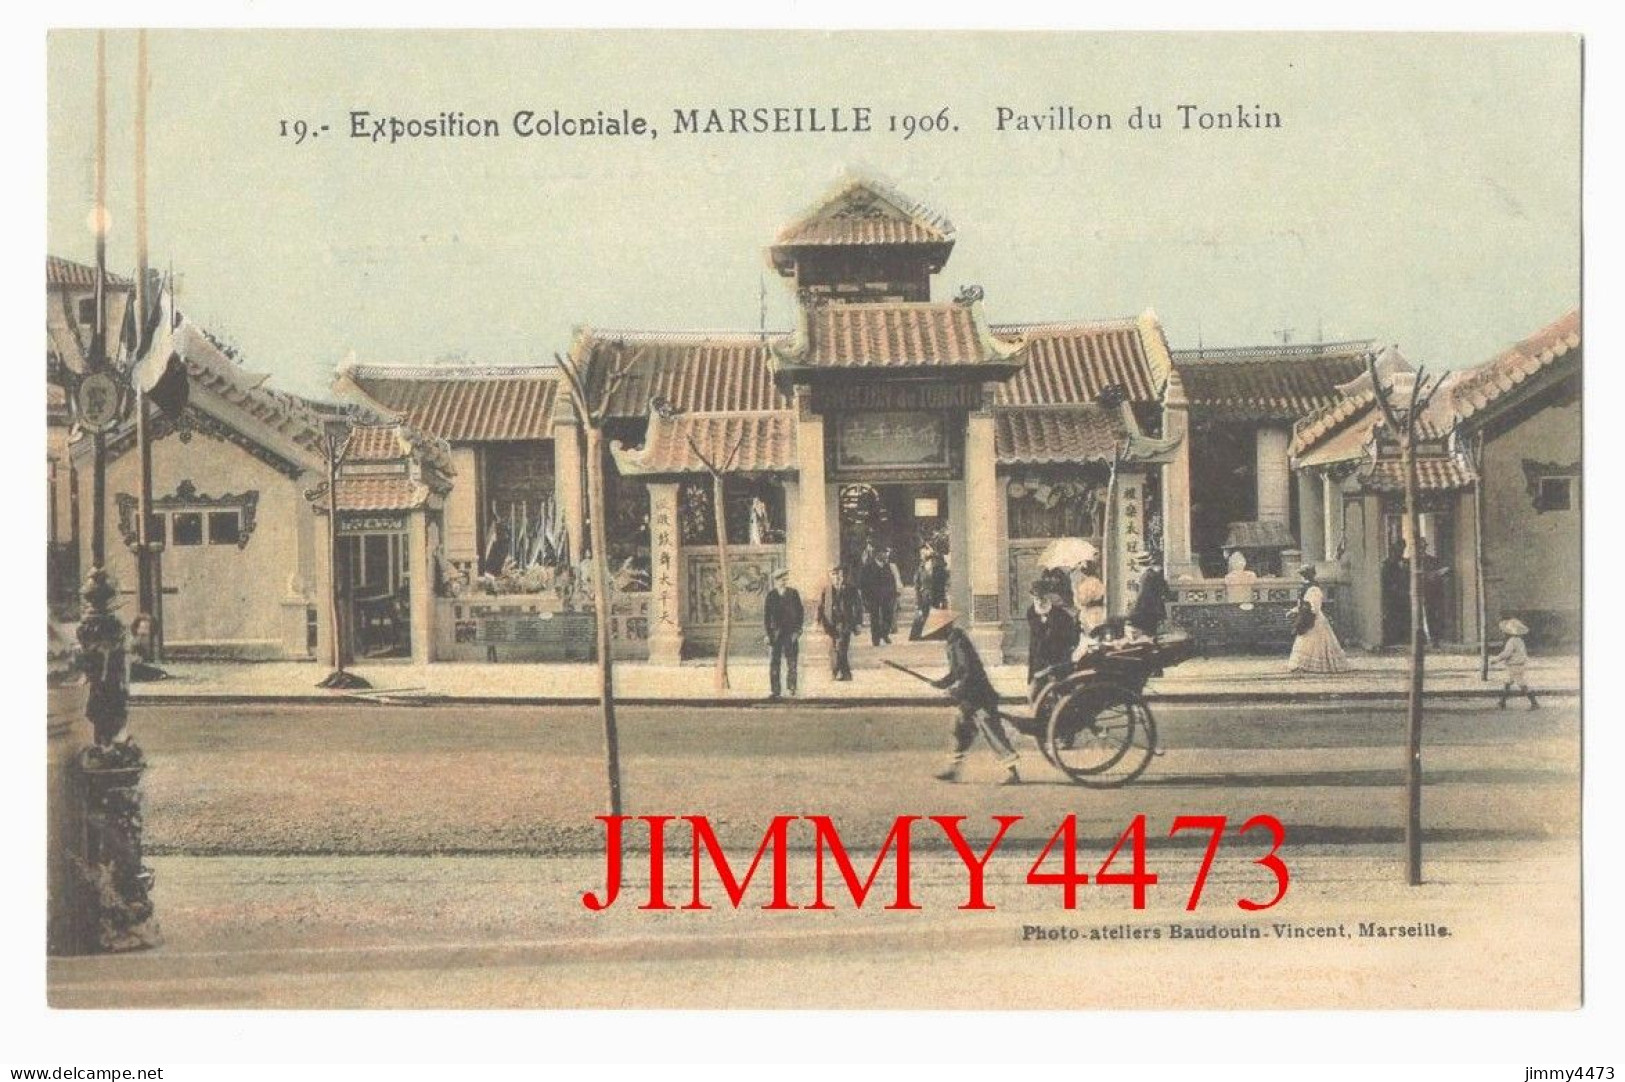 CPA - MARSEILLE 1906 - Exposition Coloniale - Pavillon Du Tonkin - N° 19 - Photo-ateliers Baudouin-Vincent - Colonial Exhibitions 1906 - 1922